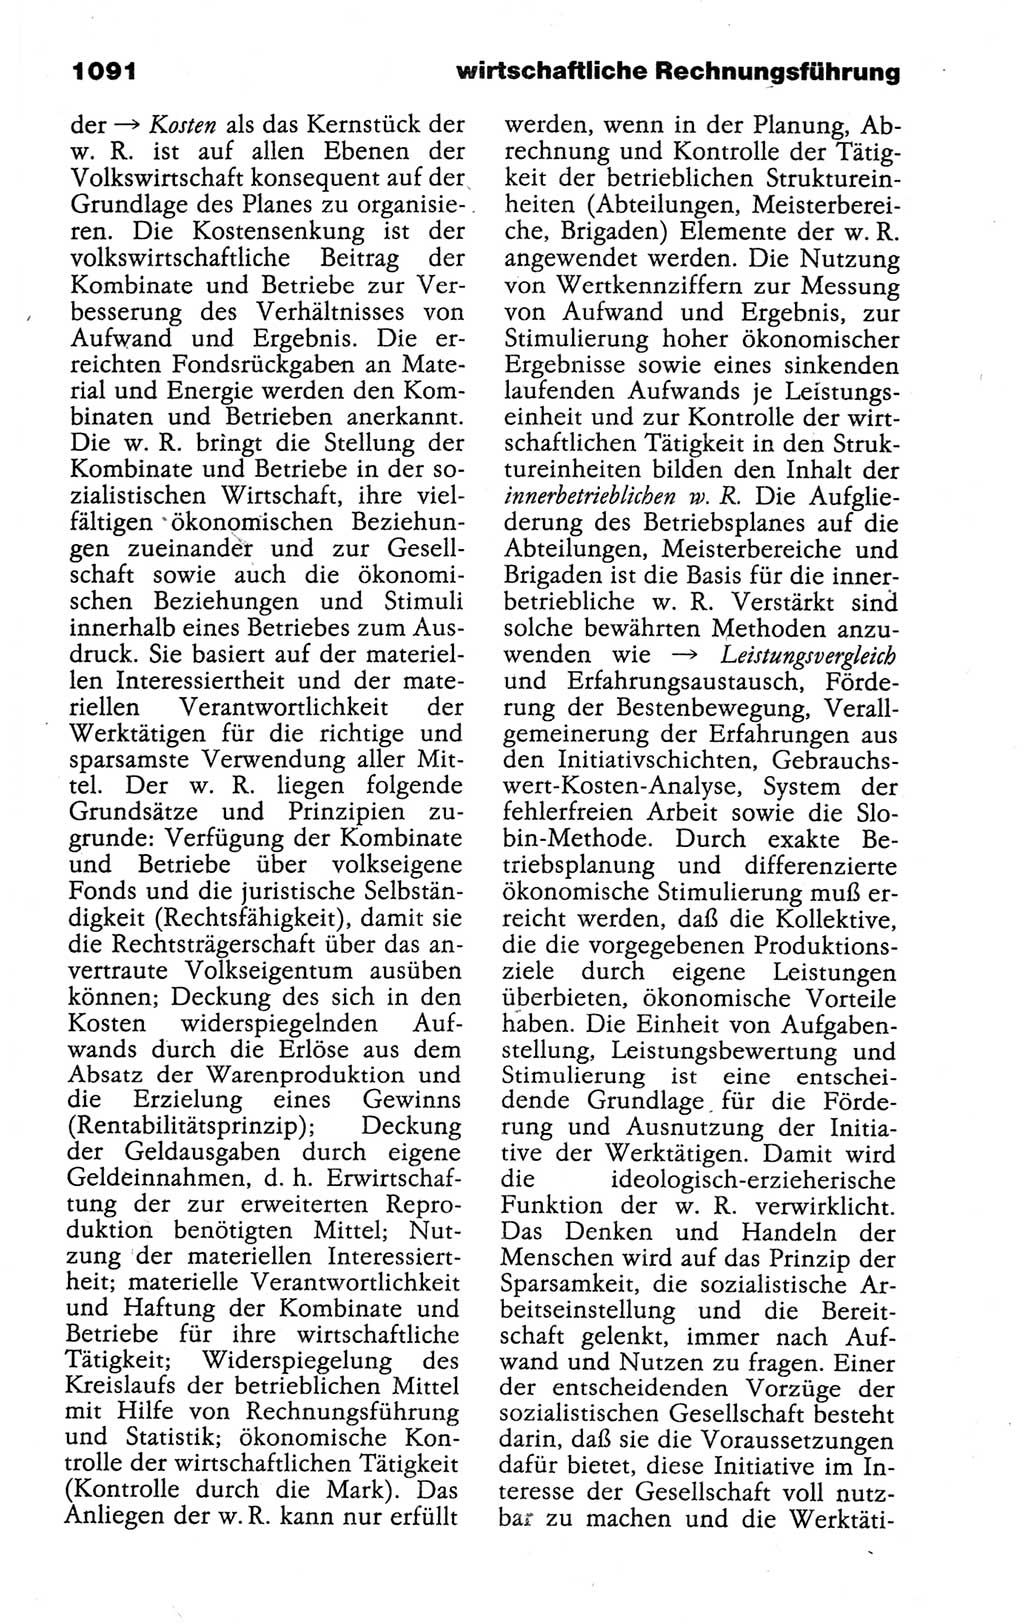 Kleines politisches Wörterbuch [Deutsche Demokratische Republik (DDR)] 1988, Seite 1091 (Kl. pol. Wb. DDR 1988, S. 1091)